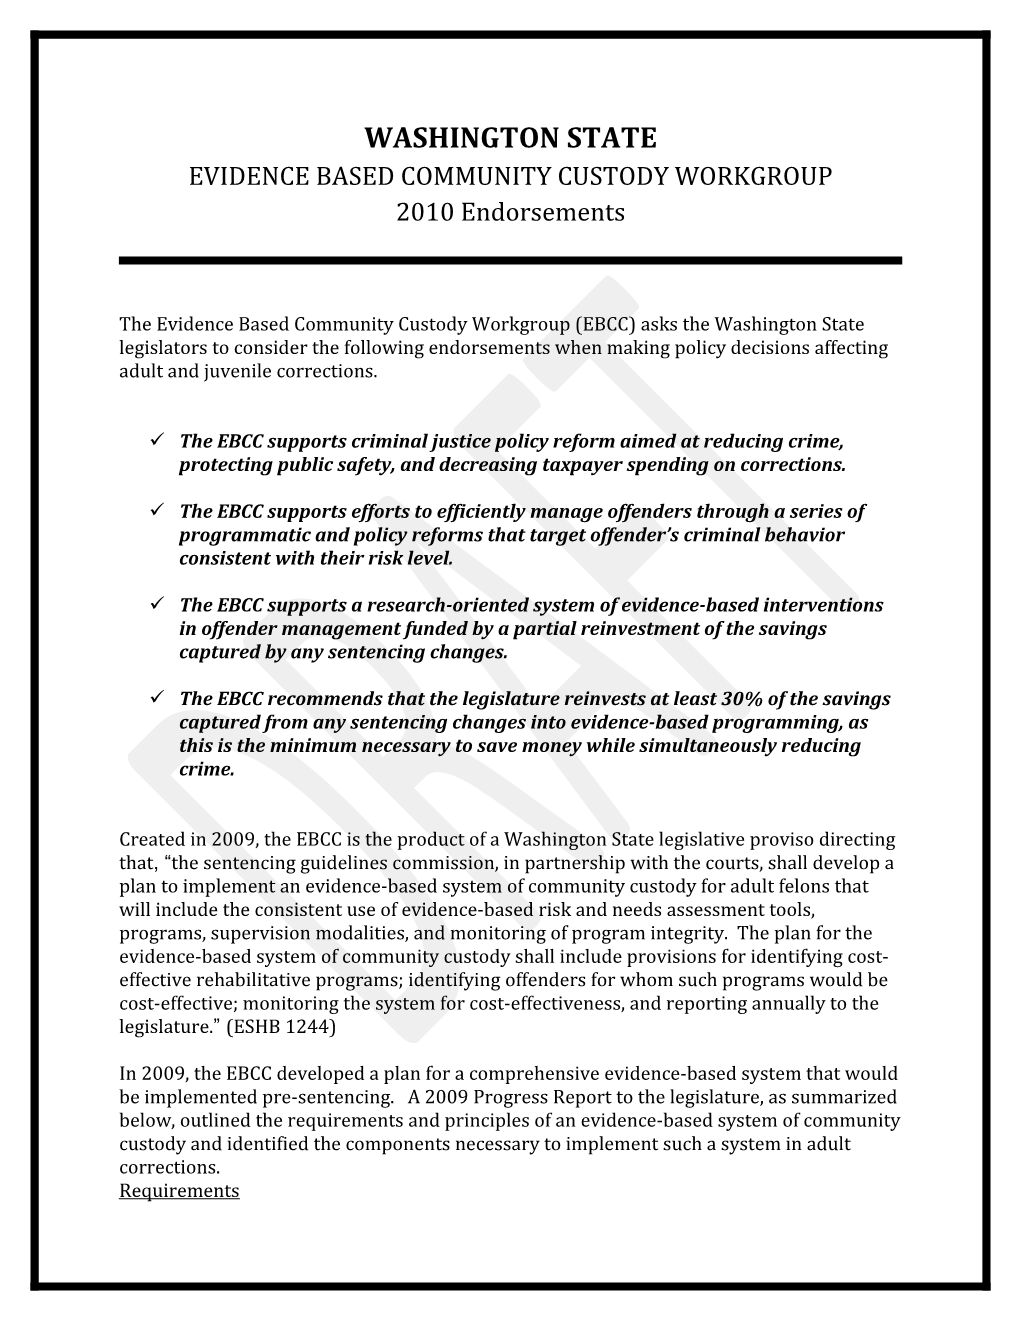 Evidence Based Community Custody Workgroup